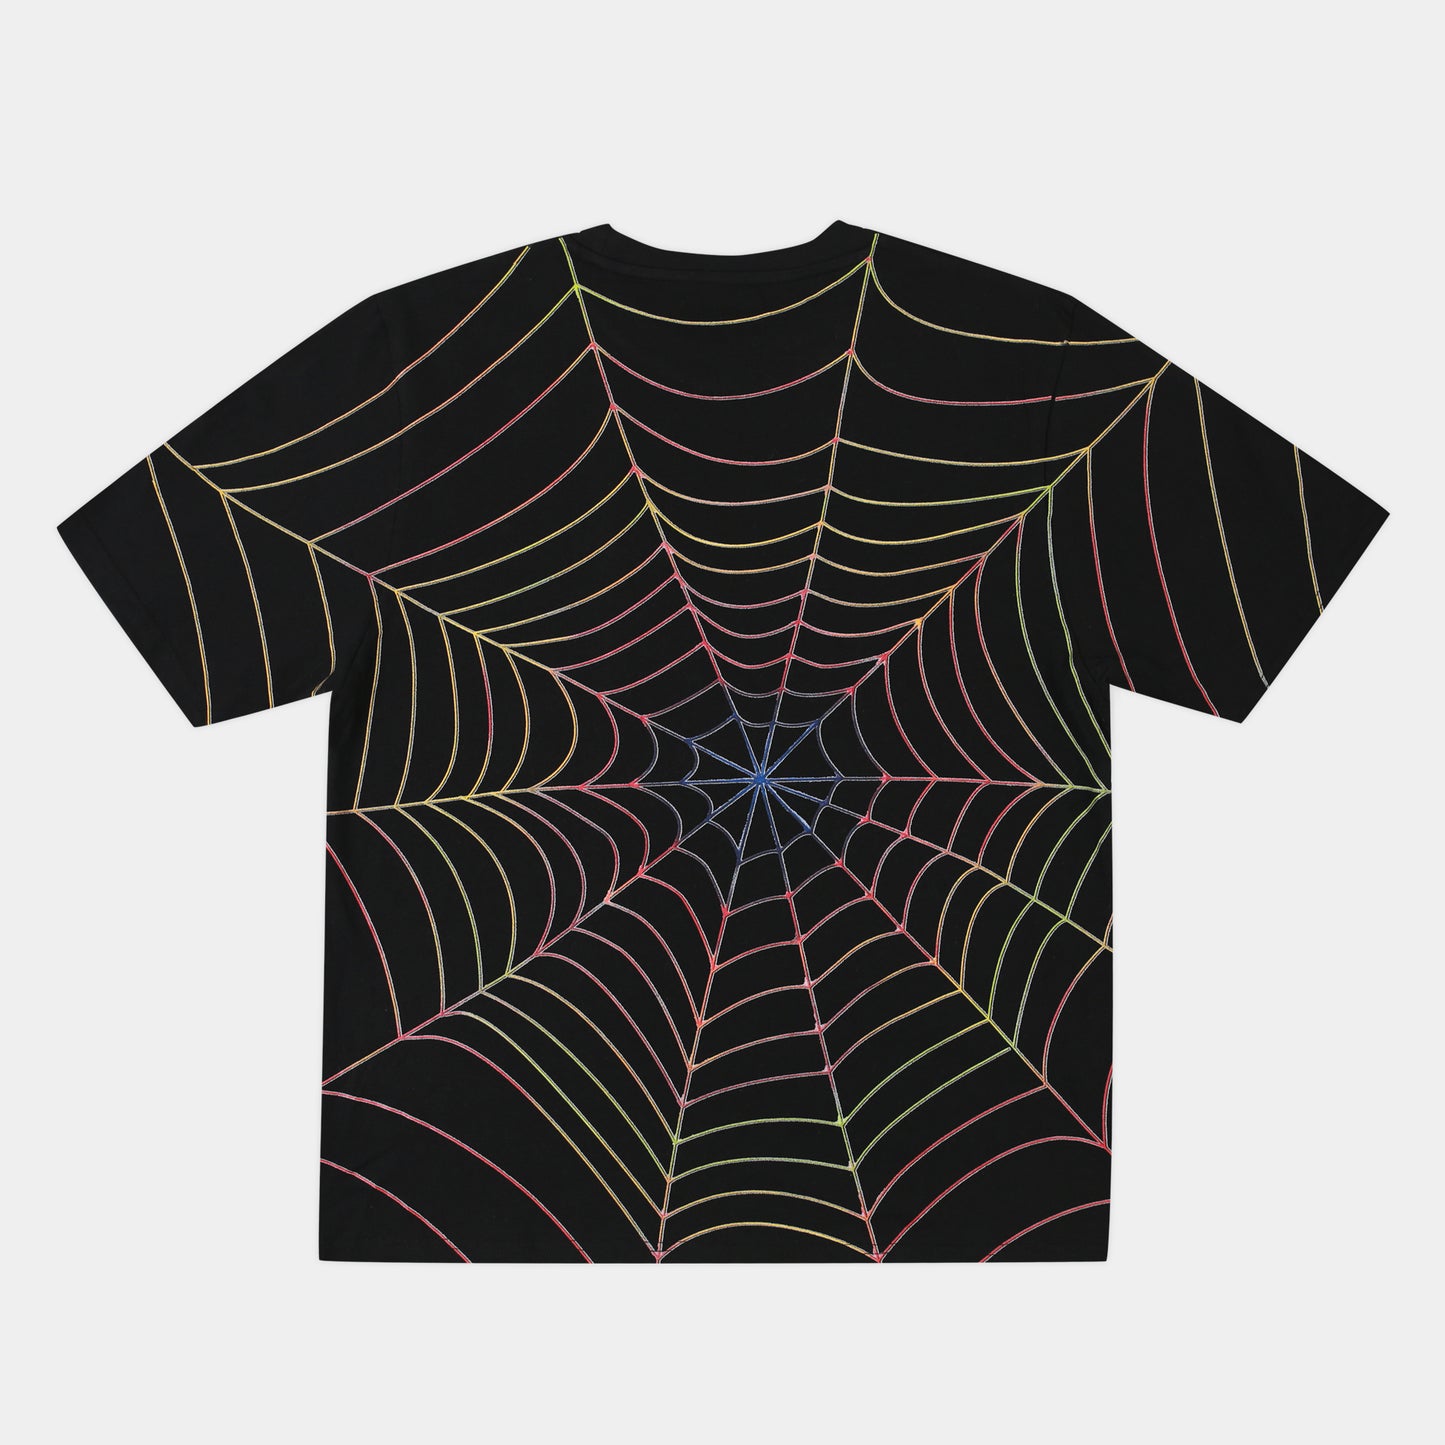 Spider T-Shirt (Black)